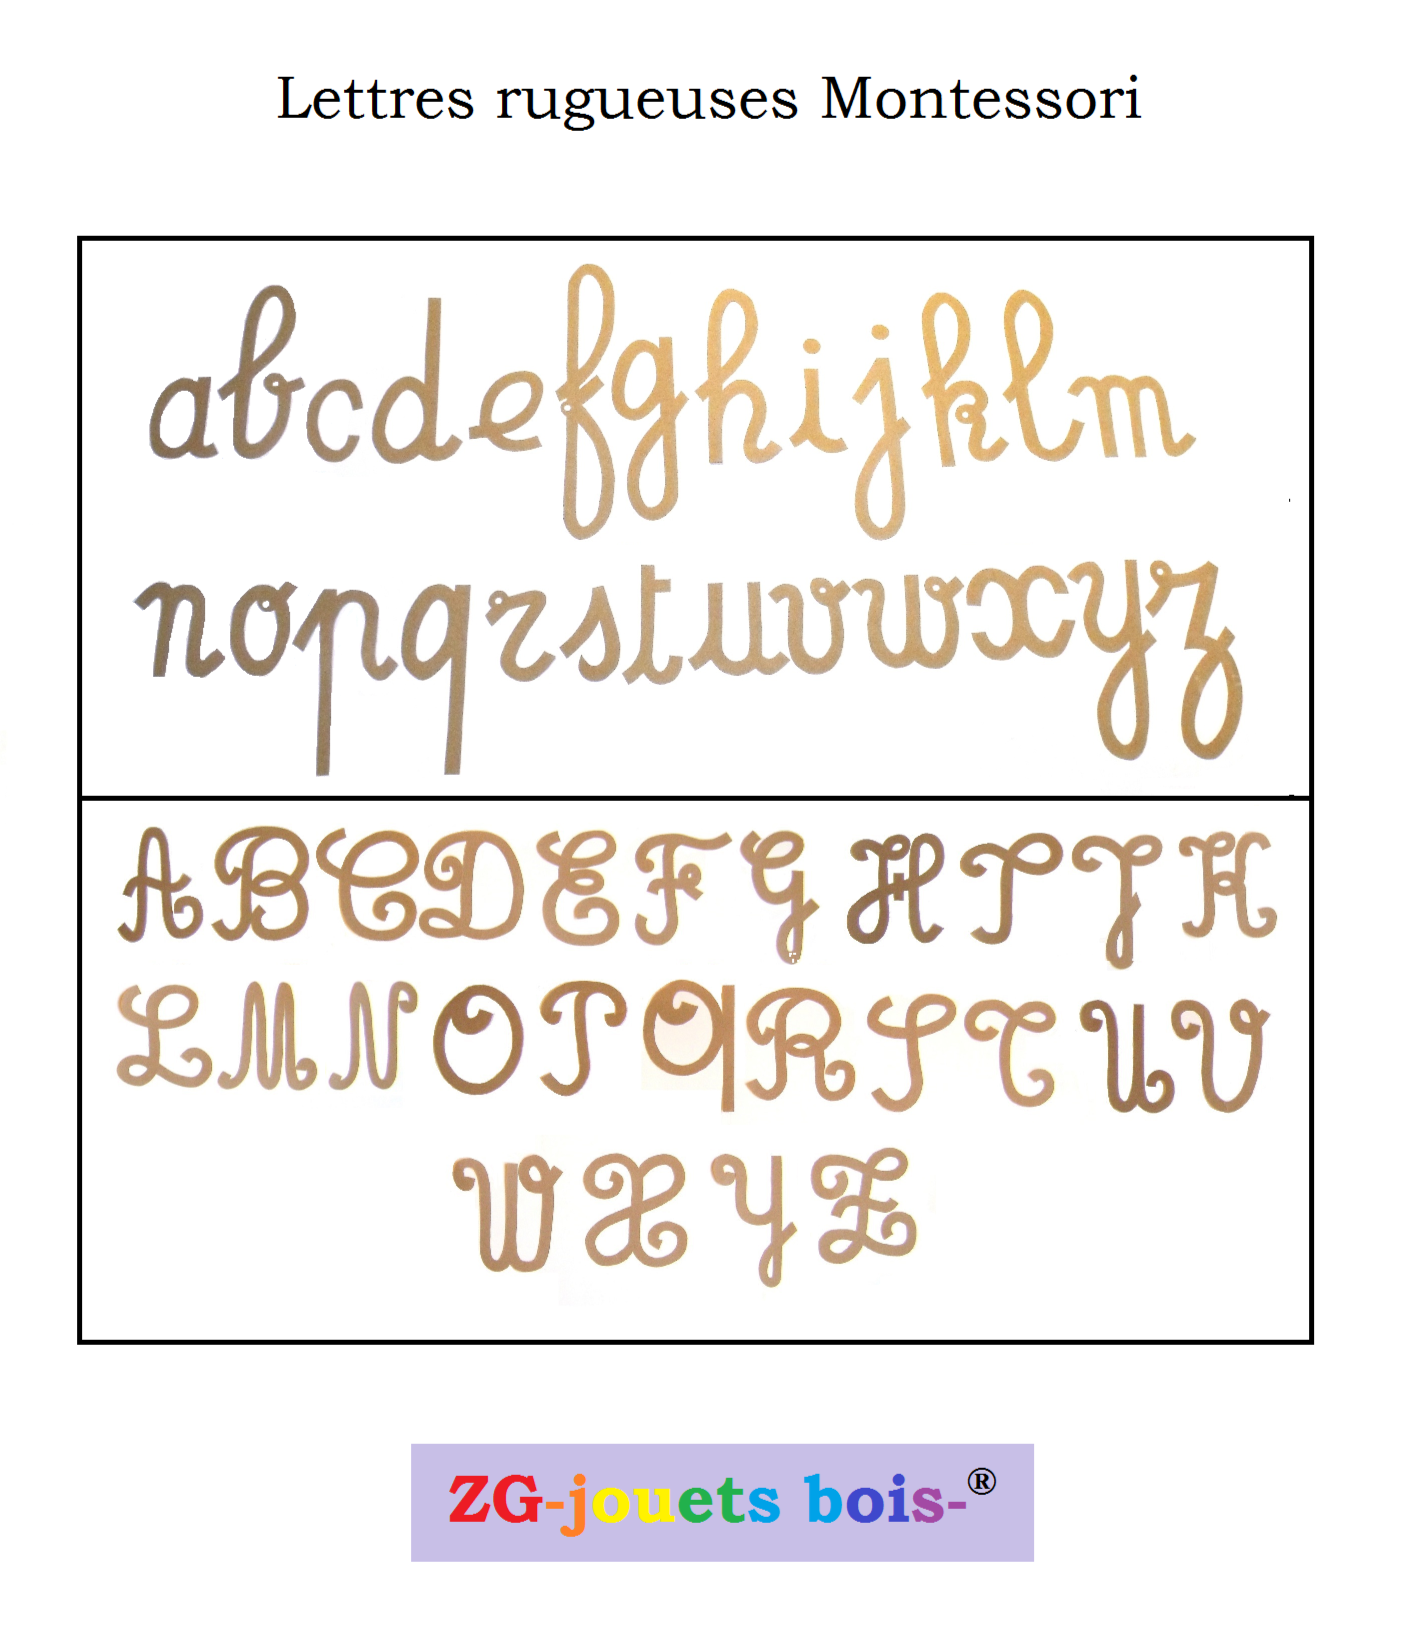 lot lettres rugueuses montessori cursives minuscules et majuscules découpées à la main par ZG-jouetsbois-